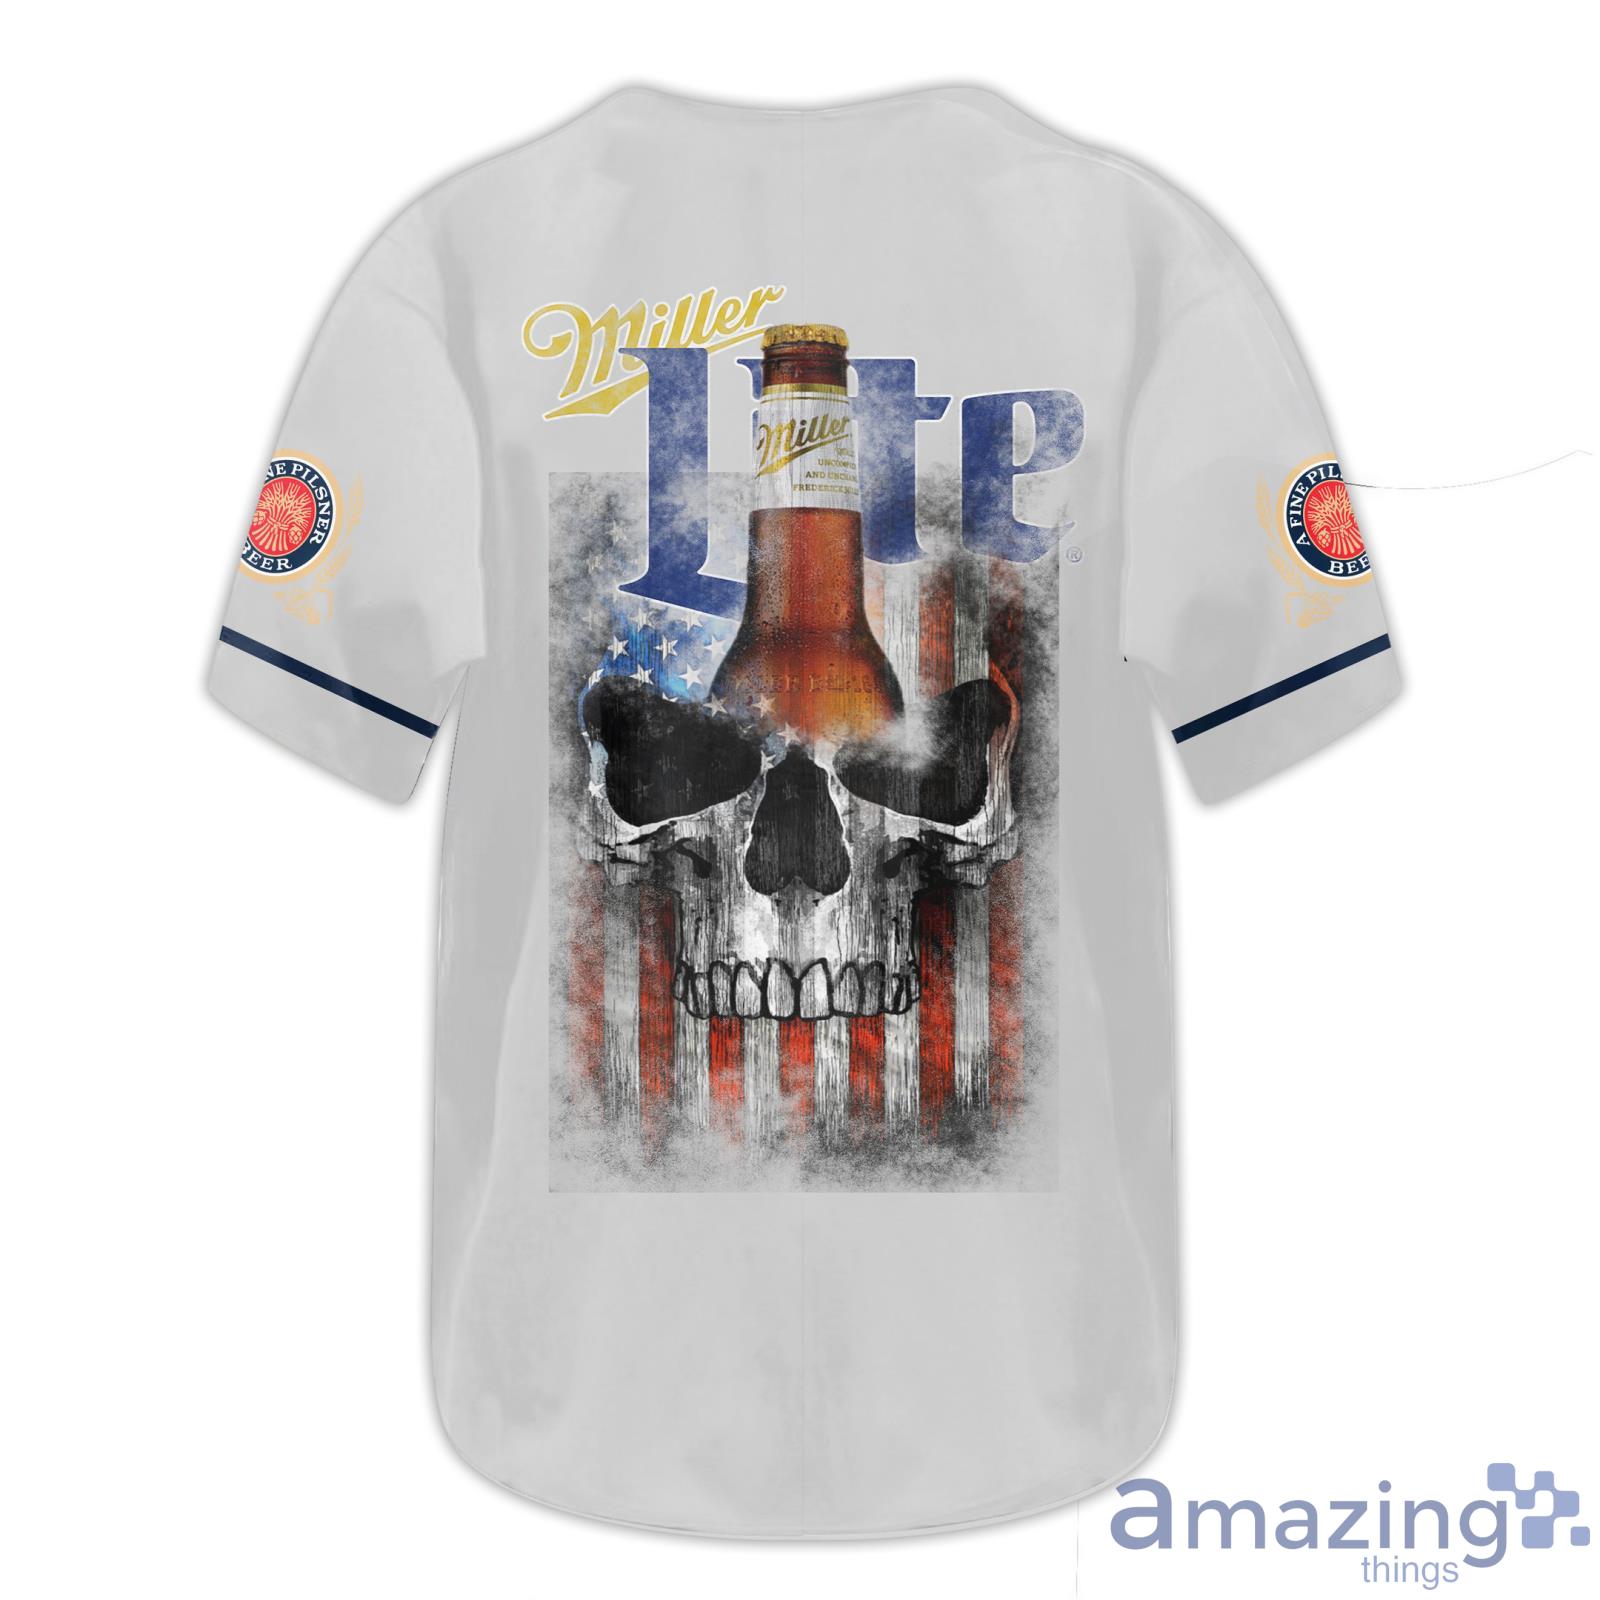 White Miller Lite Baseball Jersey Shirt